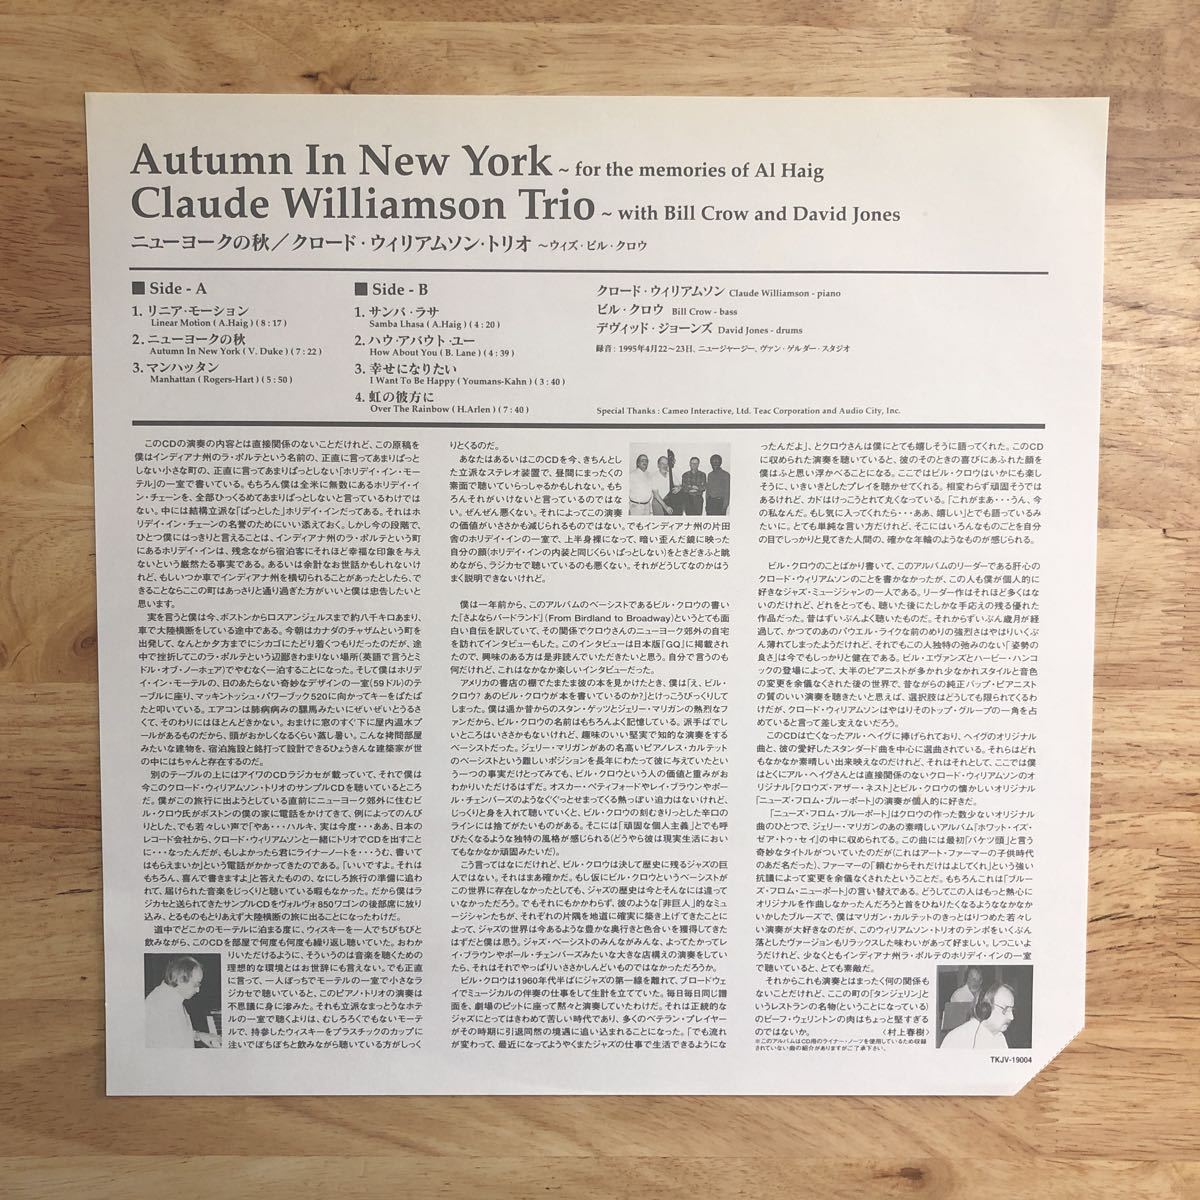 LP '96年オリジナル盤 CLAUDE WILLIAMSON TRIO クロード・ウィリアムソン/AUTUMN IN NEW YORK[帯:解説付 村上春樹:再プレスではありません]_画像3